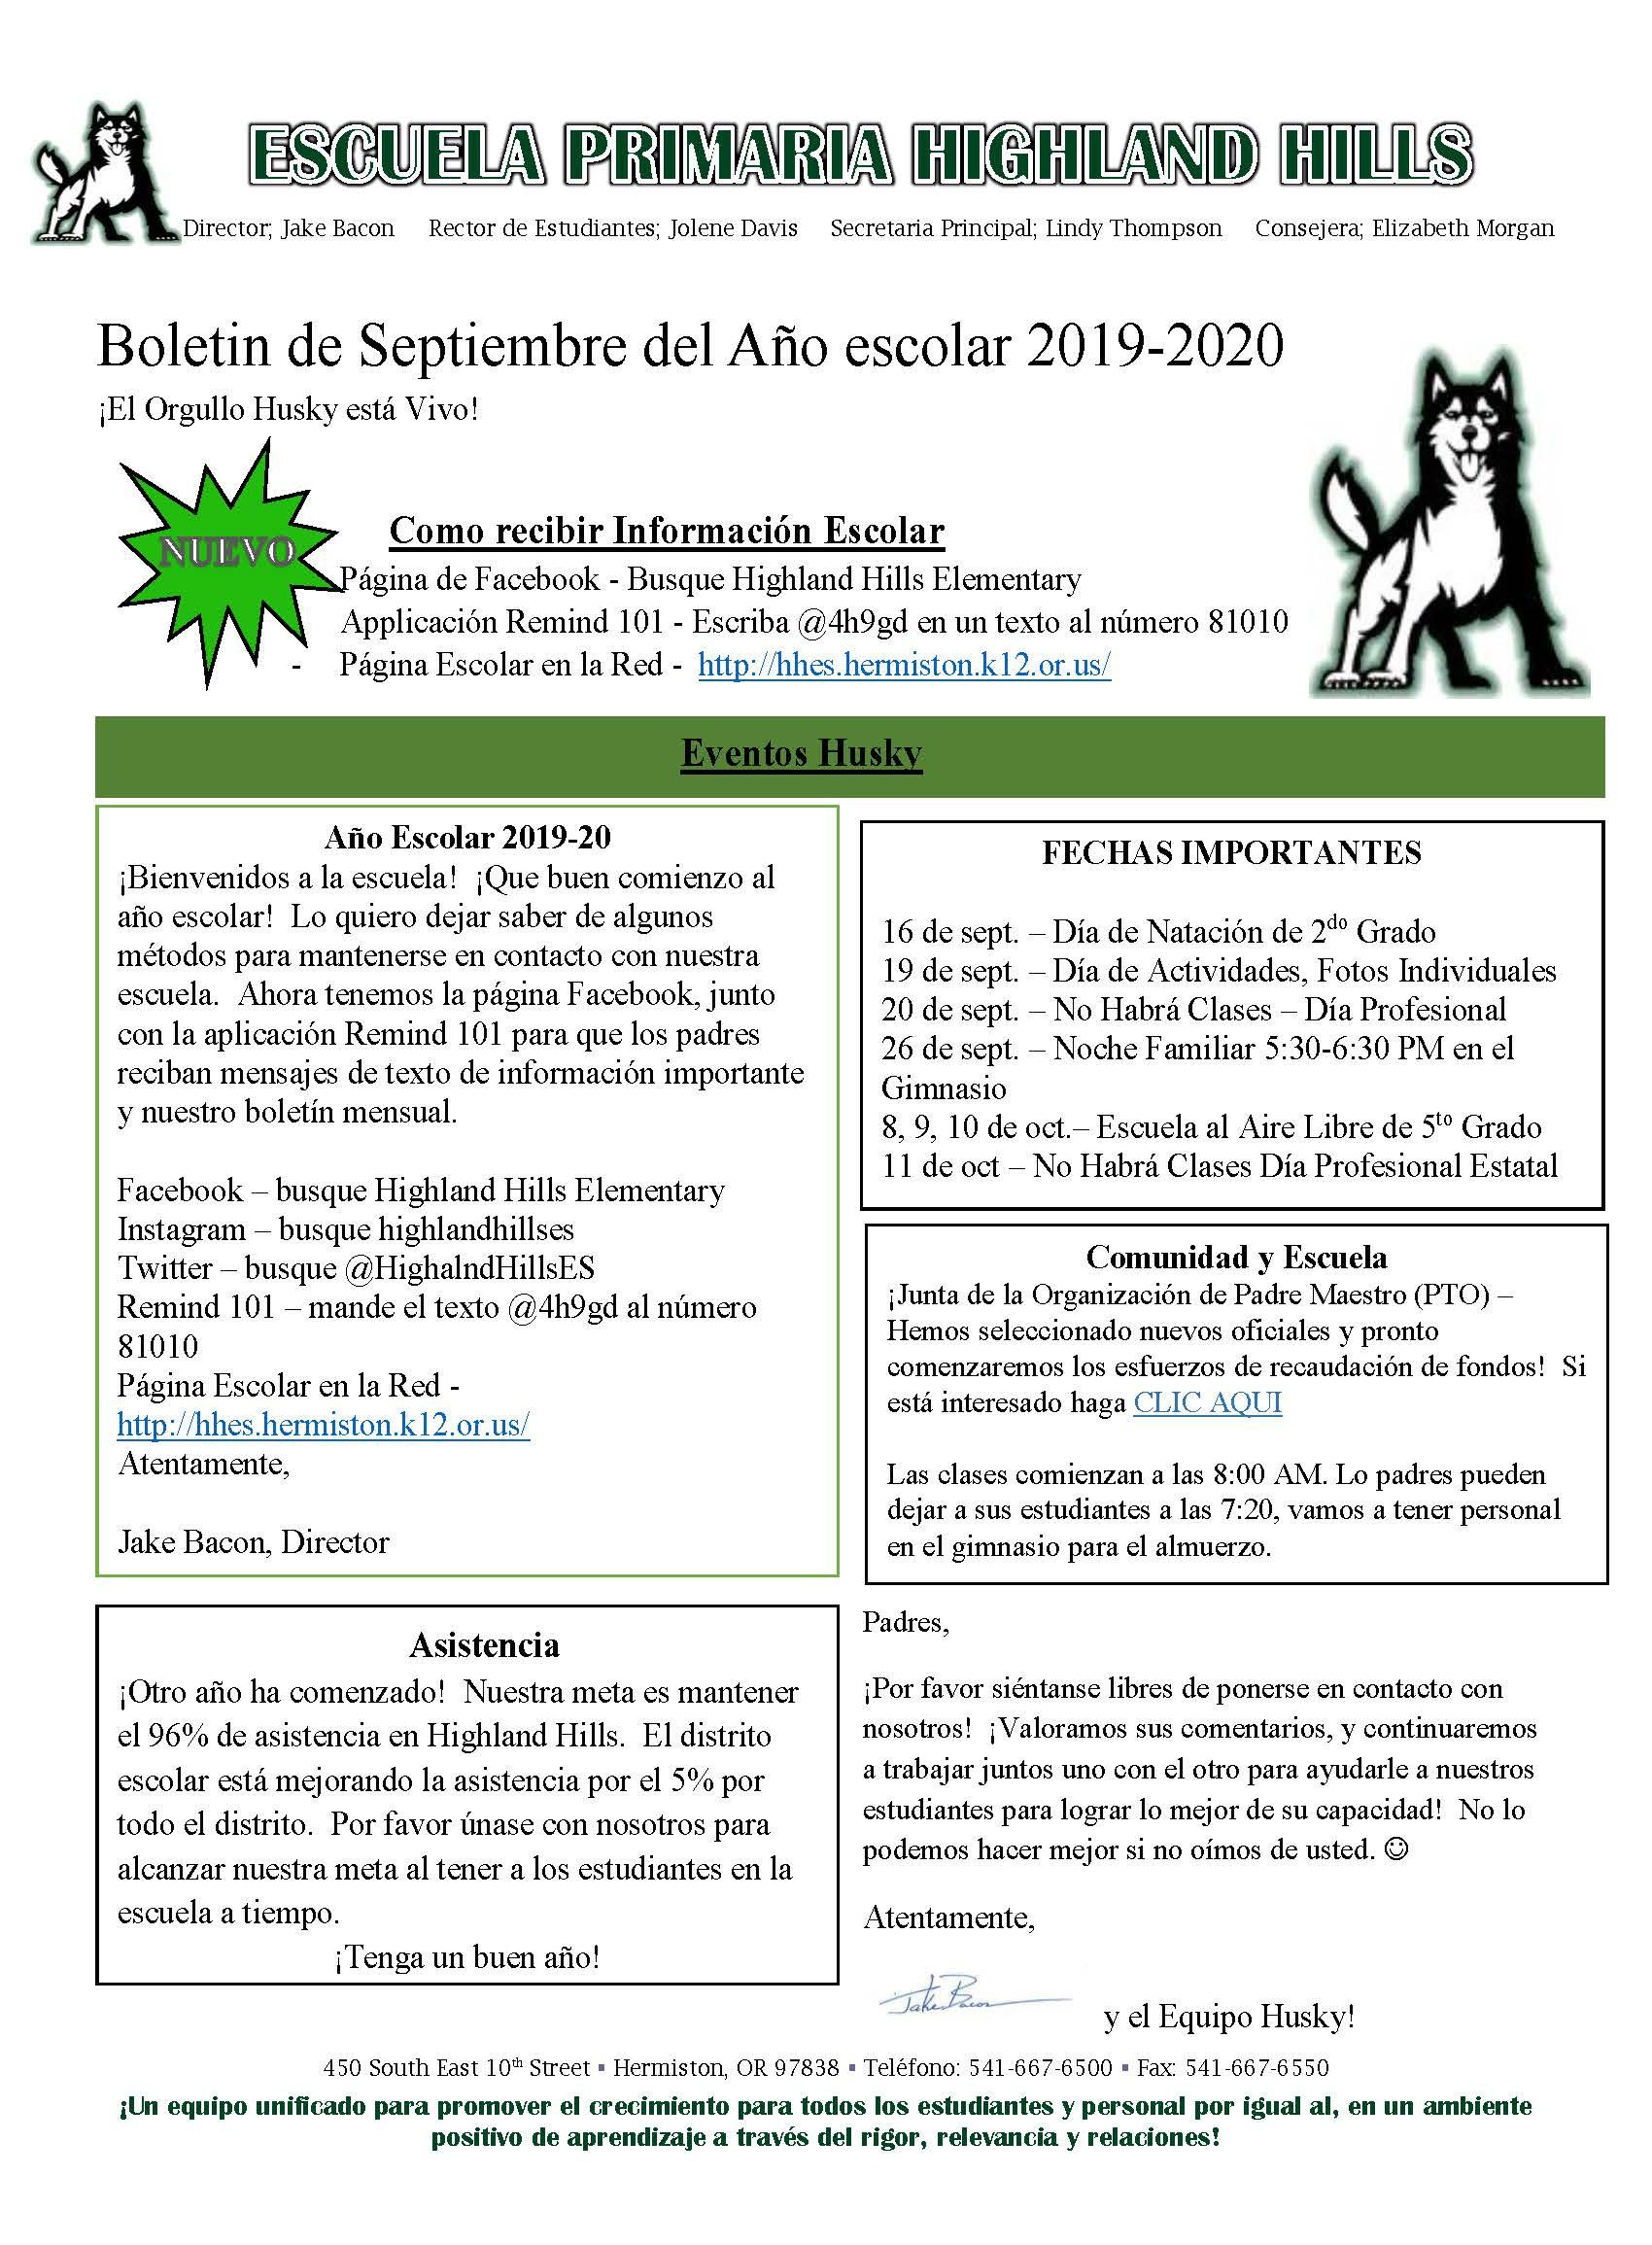 September's newsletter in Spanish. 